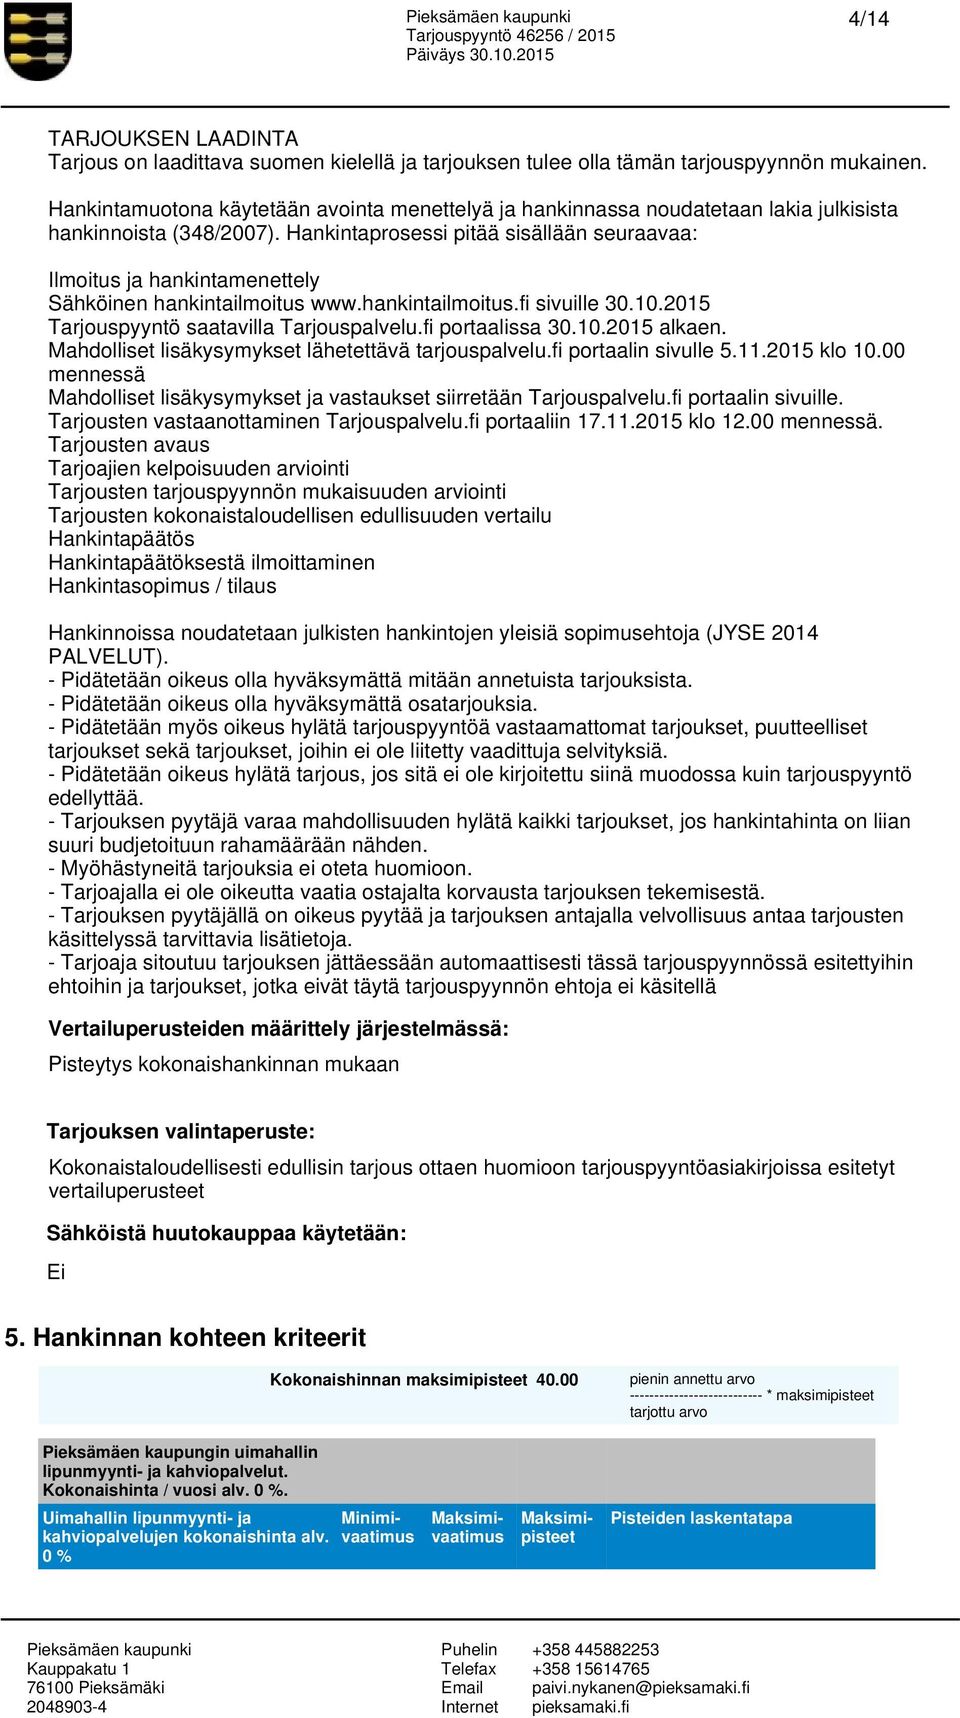 Hankintaprosessi pitää sisällään seuraavaa: Ilmoitus ja hankintamenettely Sähköinen hankintailmoitus www.hankintailmoitus.fi sivuille 30.10.2015 Tarjouspyyntö saatavilla Tarjouspalvelu.